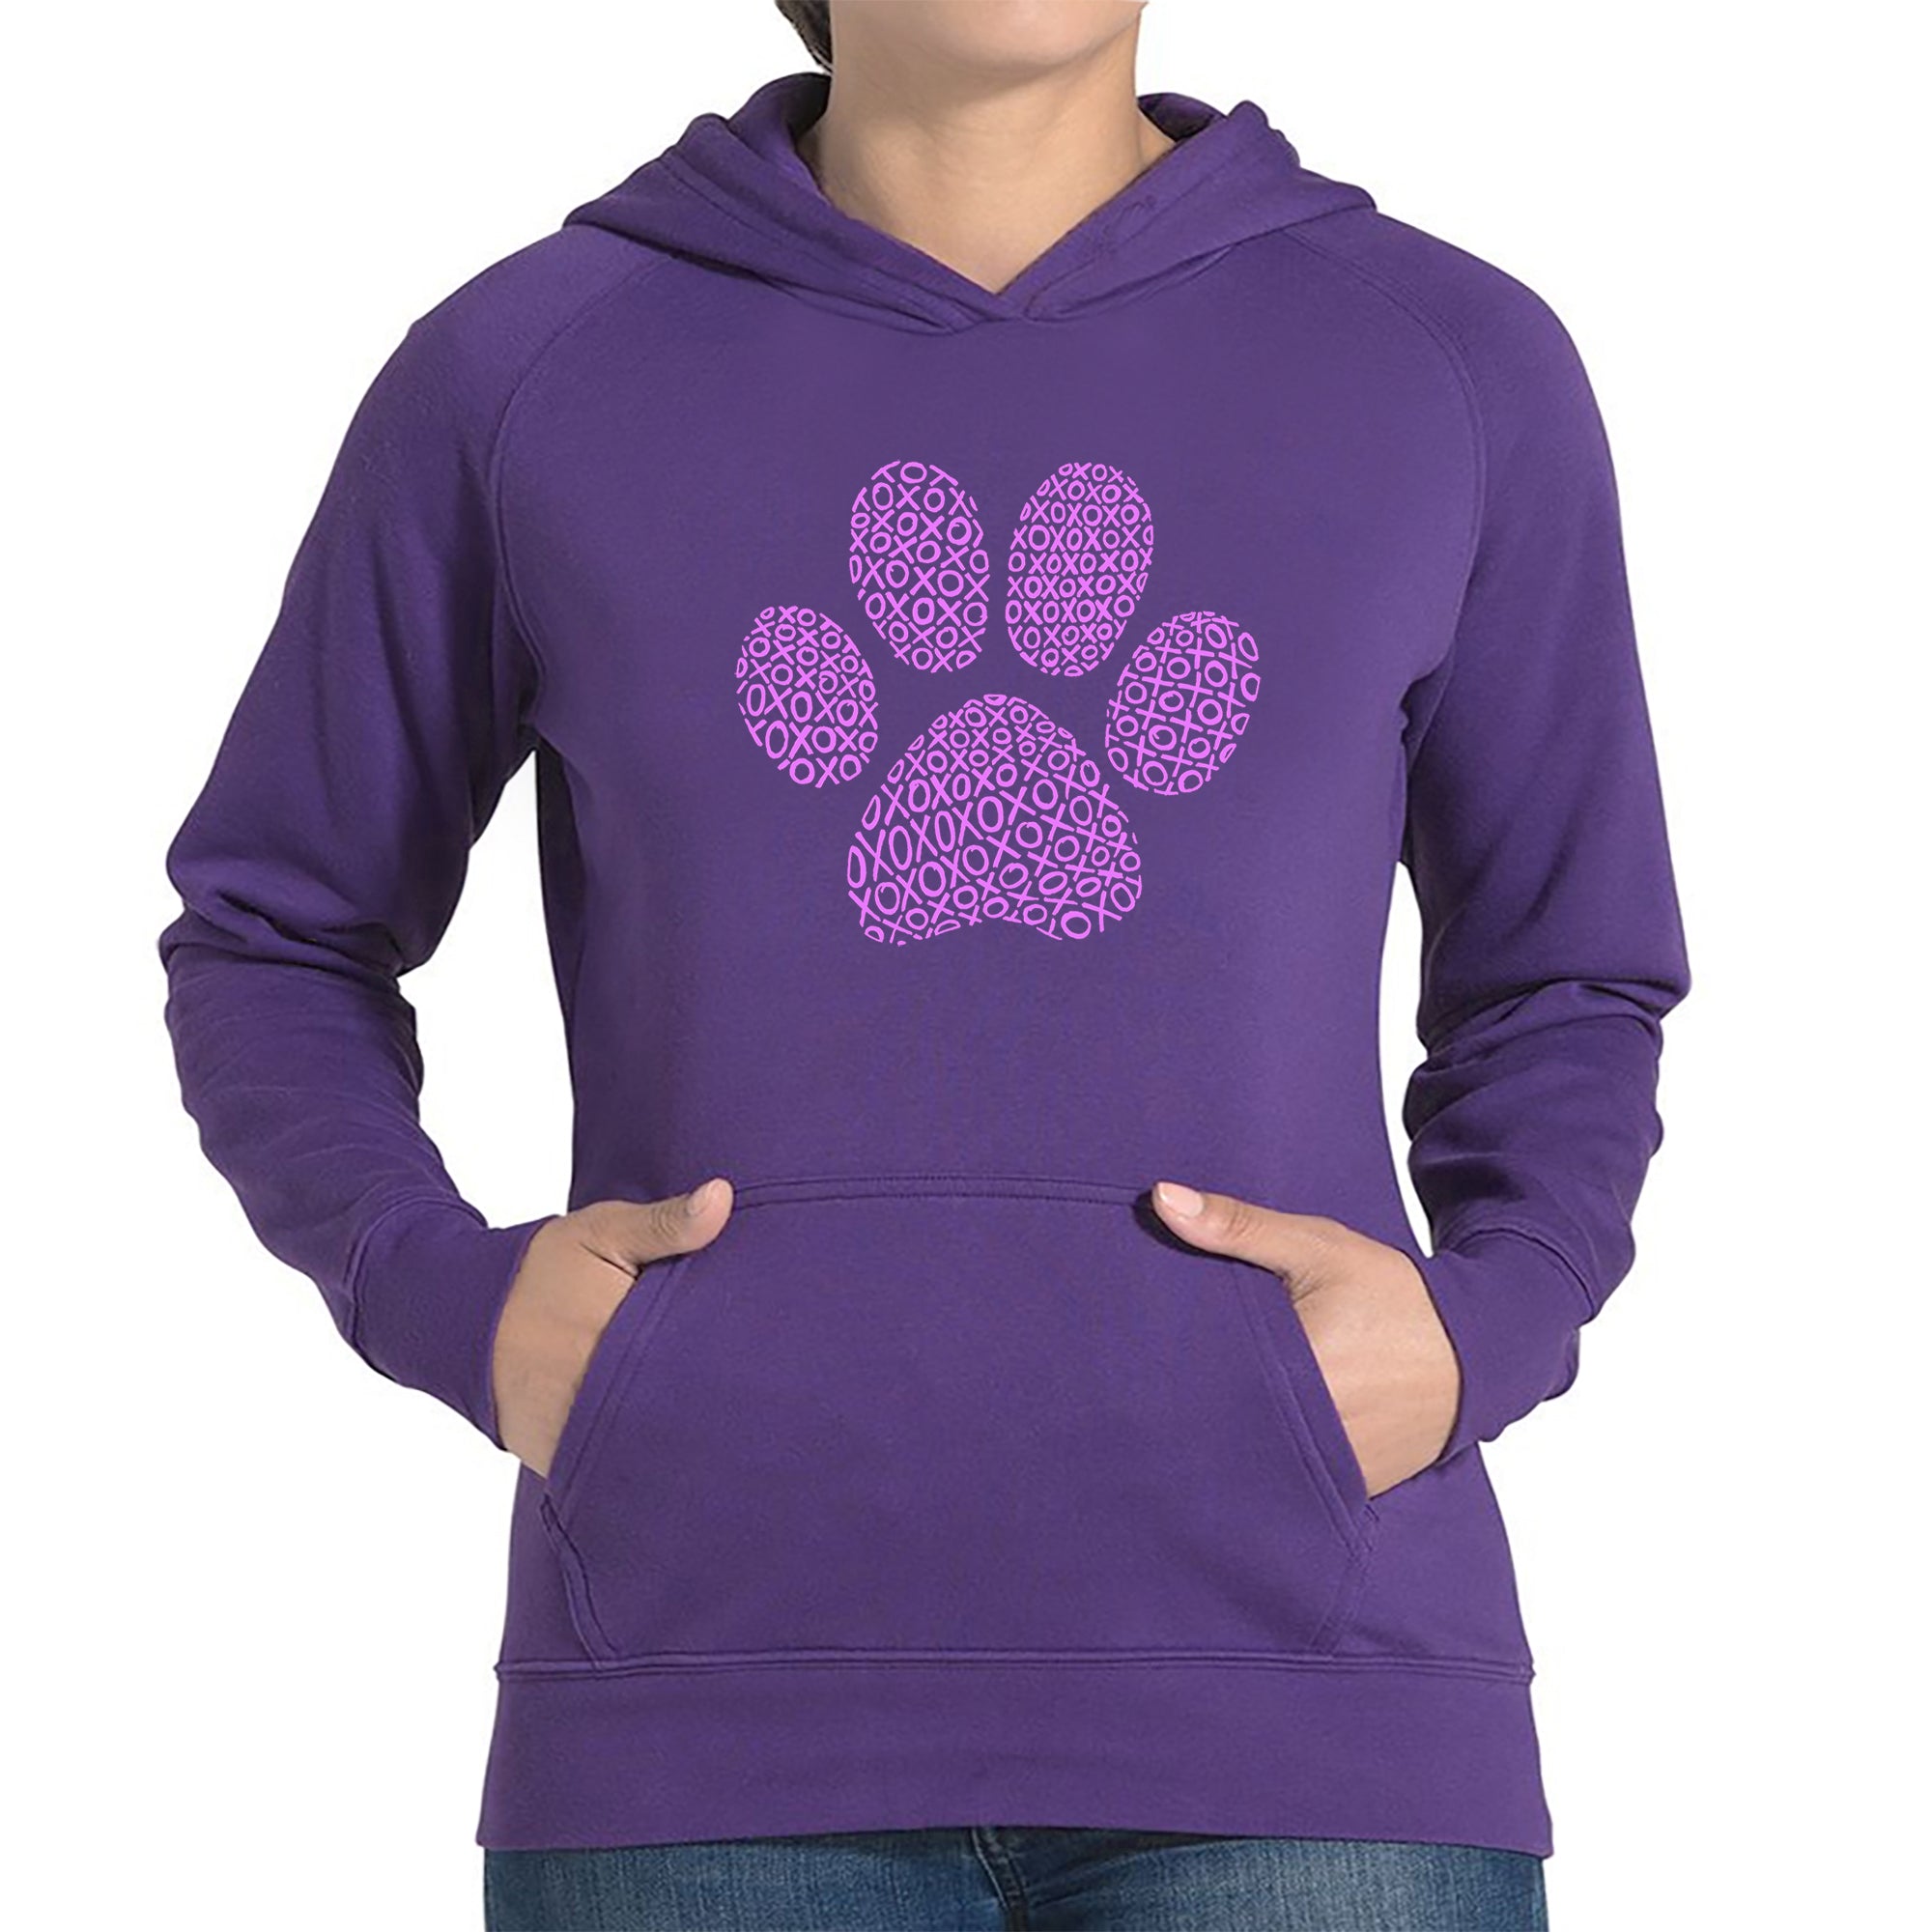 XOXO Dog Paw - Women's Word Art Hooded Sweatshirt - Purple - Large